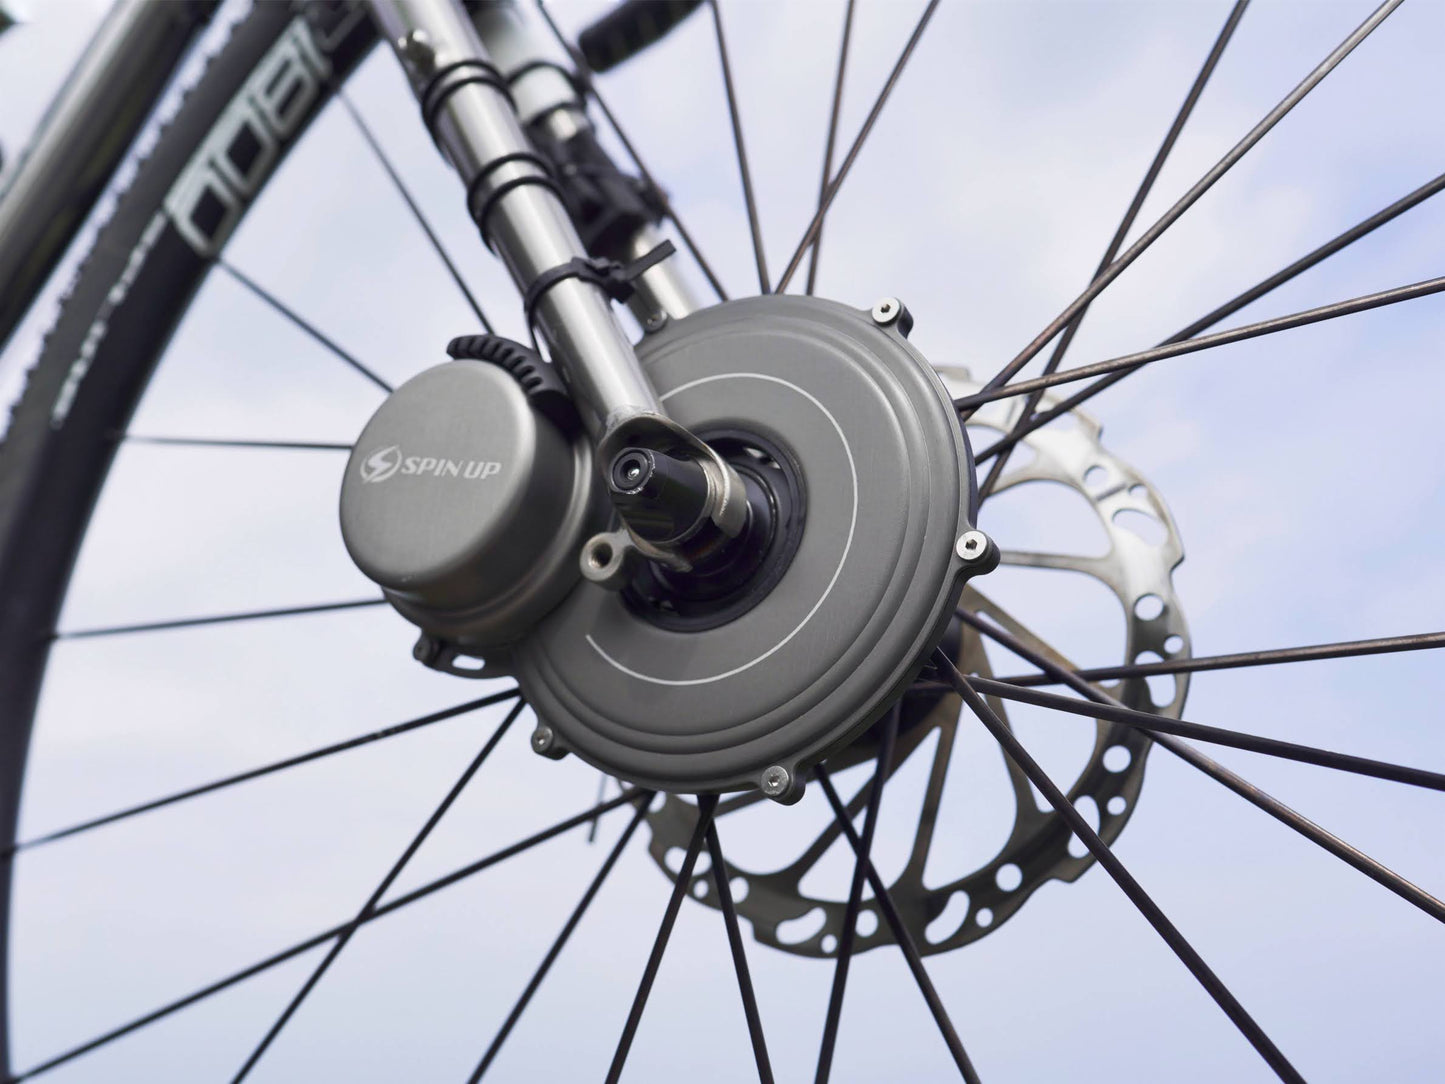 Gerador de ciclismo Spin Up Tour F12W-Pro | Suporte de roda dianteira no garfo | Design compacto e leve | Frete grátis para todo o mundo